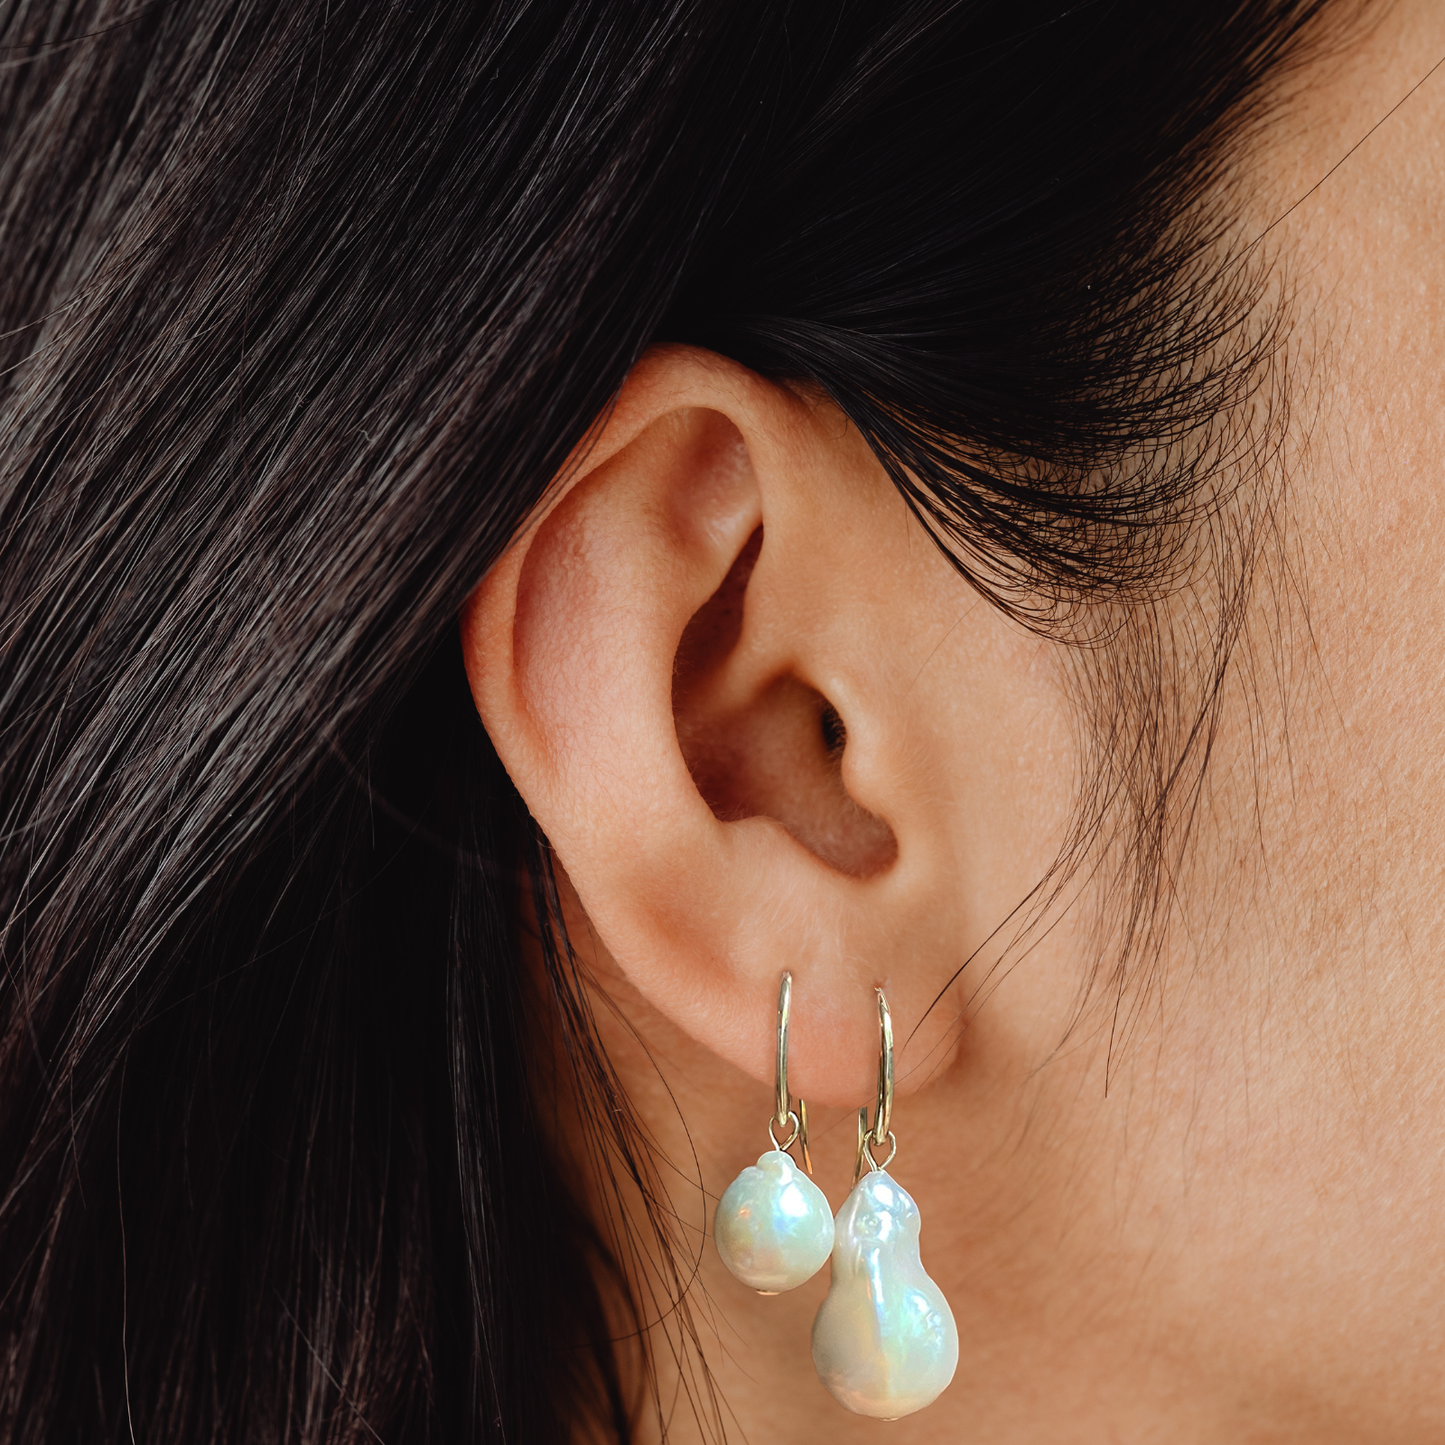 14k gold Baroque Pearl Drop Earrings styled on a ear